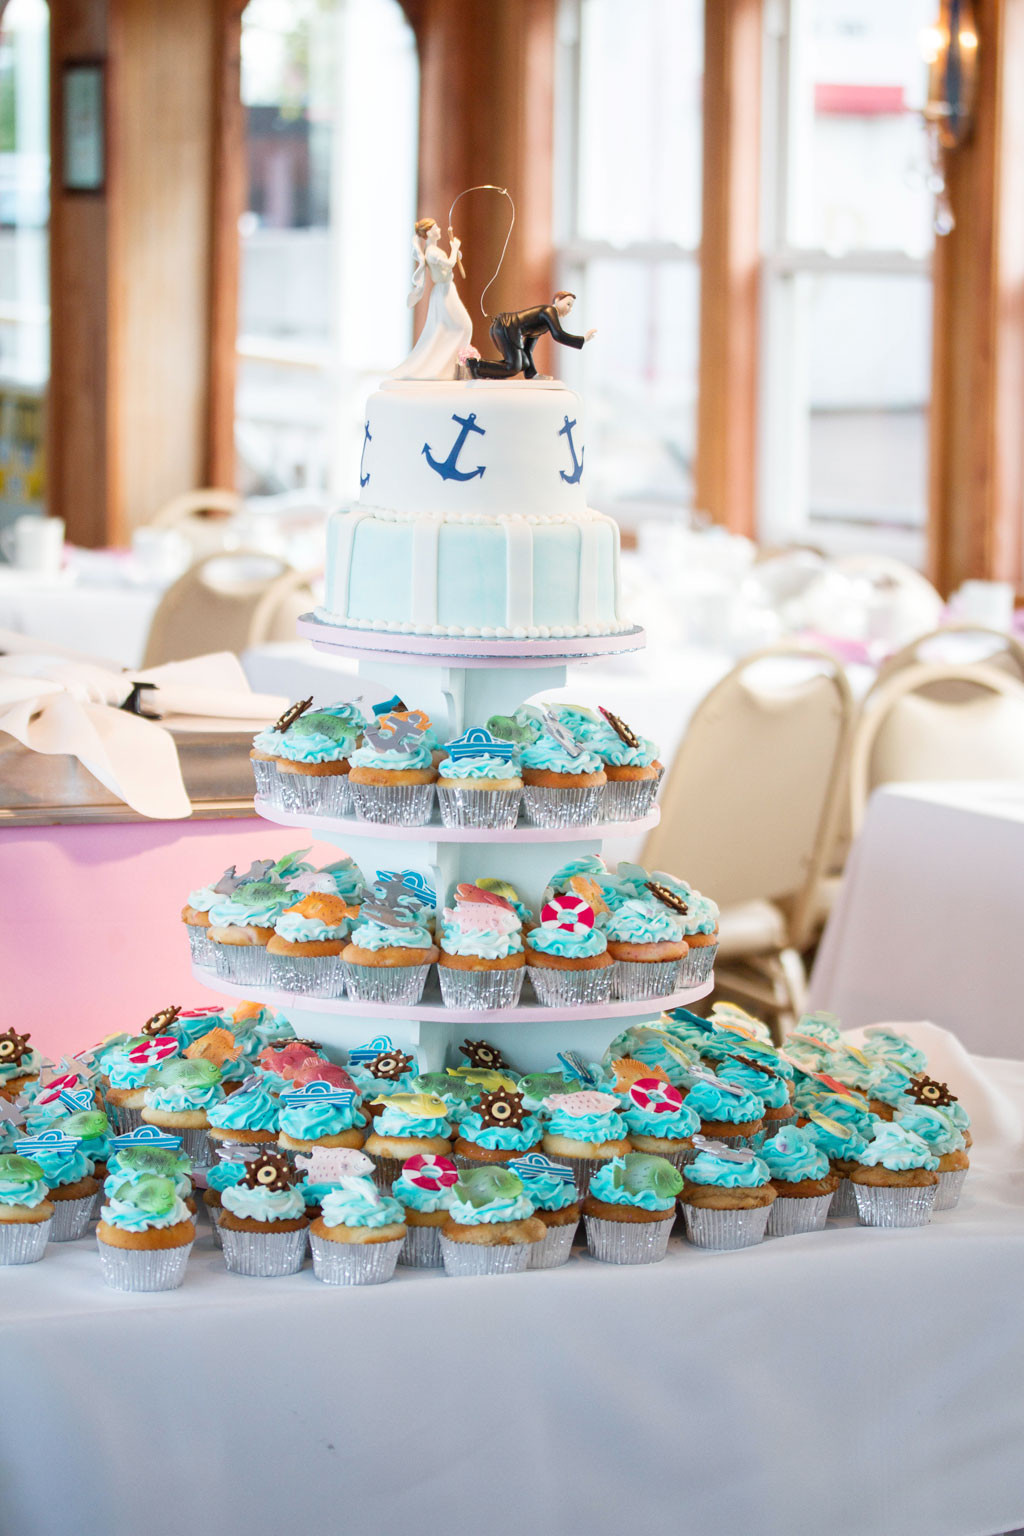 Wedding Cakes Erie Pa Best 20 Wedding Cakes Erie Pa Decorating Wedding Cake Cake Ideas